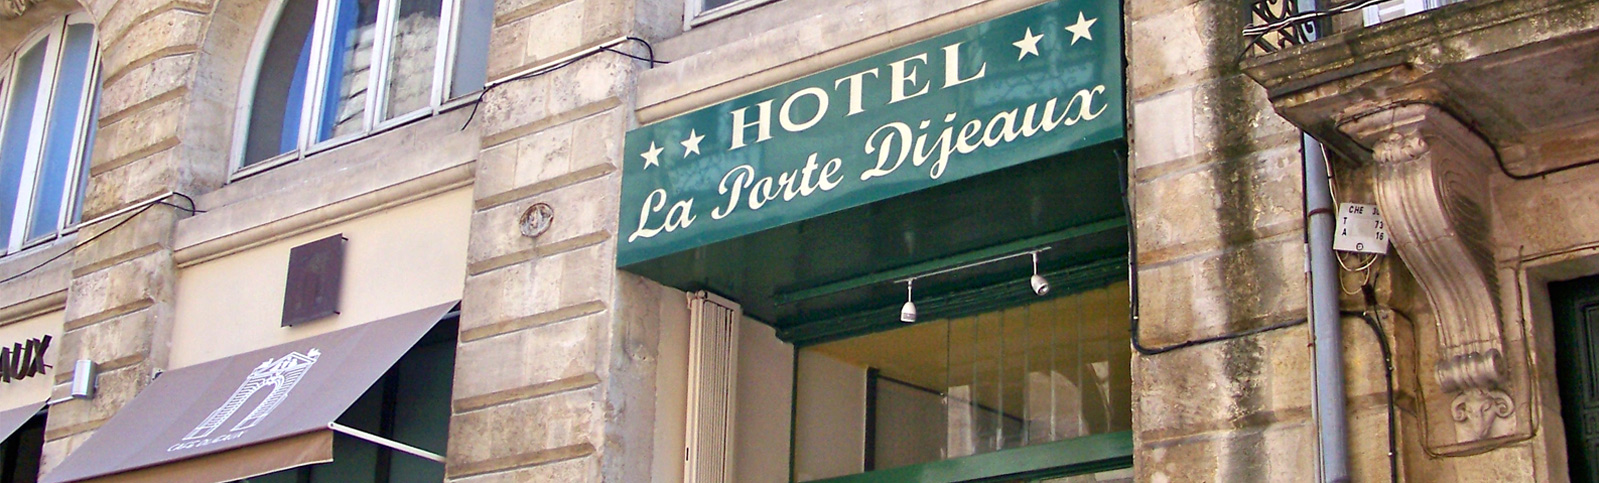 Photos hotel La Porte Dijeaux Bordeaux